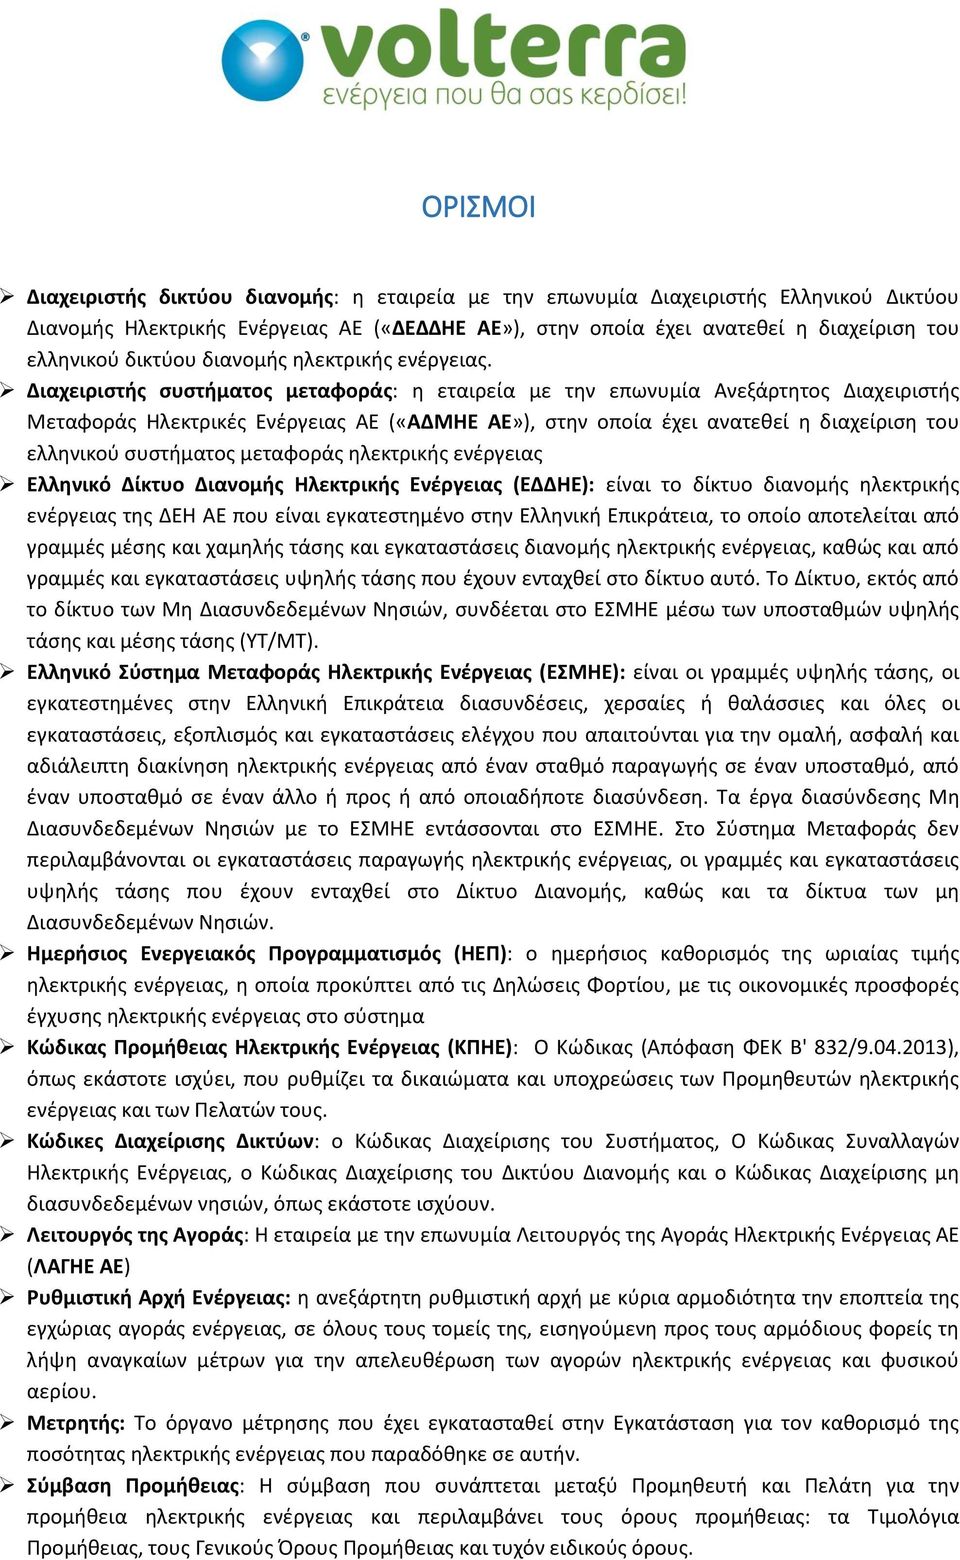 Διαχειριστής συστήματος μεταφοράς: η εταιρεία με την επωνυμία Ανεξάρτητος Διαχειριστής Μεταφοράς Ηλεκτρικές Ενέργειας ΑΕ («ΑΔΜΗΕ ΑΕ»), στην οποία έχει ανατεθεί η διαχείριση του ελληνικού συστήματος